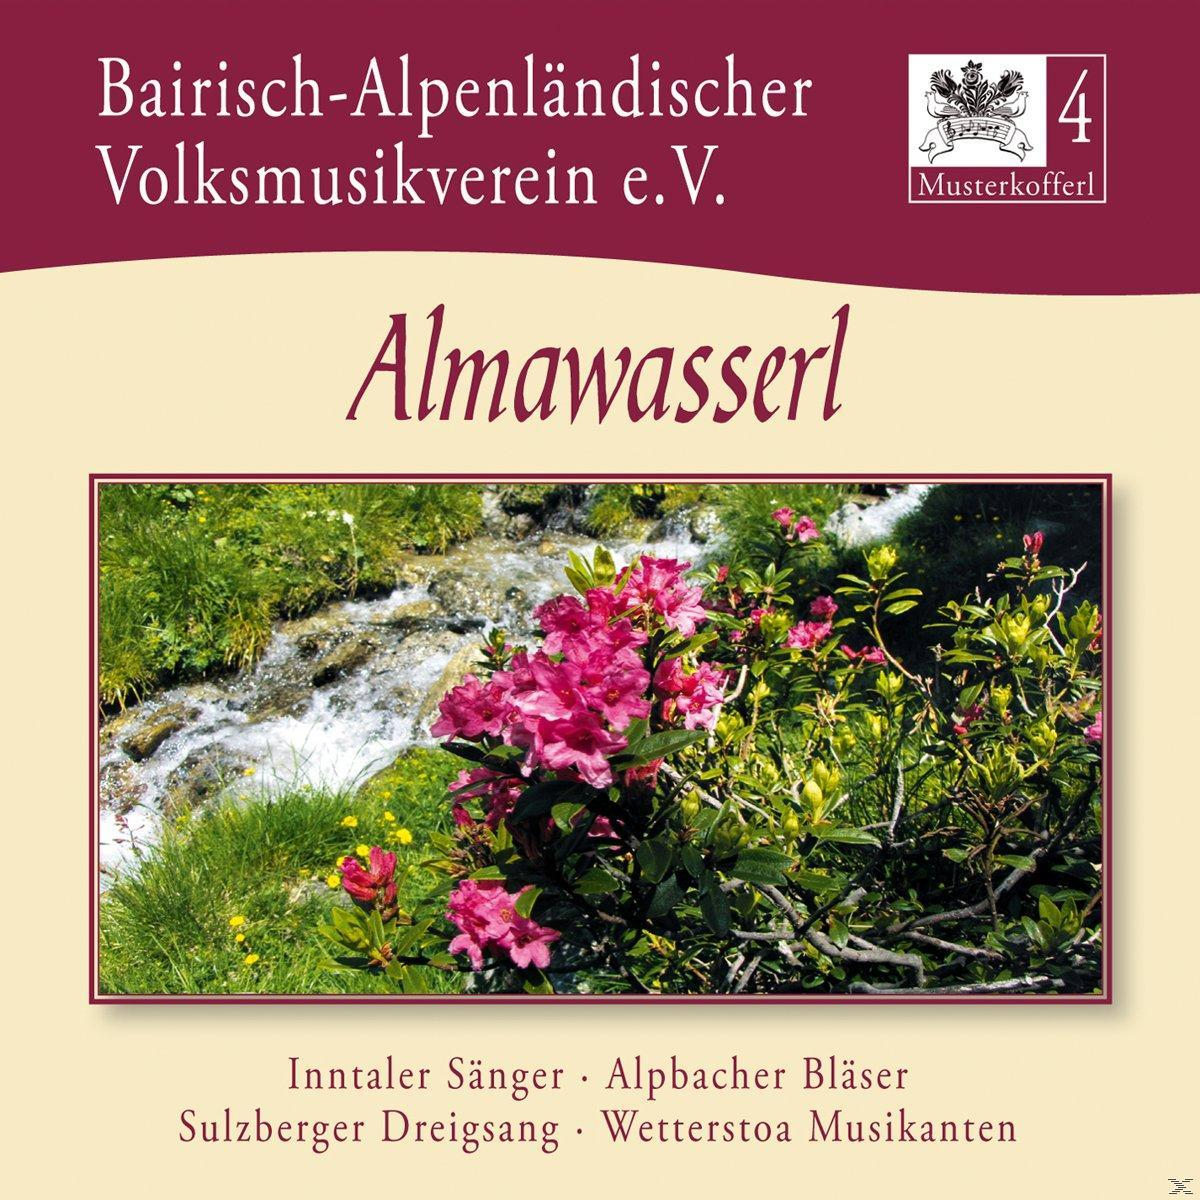 4-Almawasserl Musterkofferl e.V - - VARIOUS, (CD) Bairisch-Alpenländ.Volksmusikverein